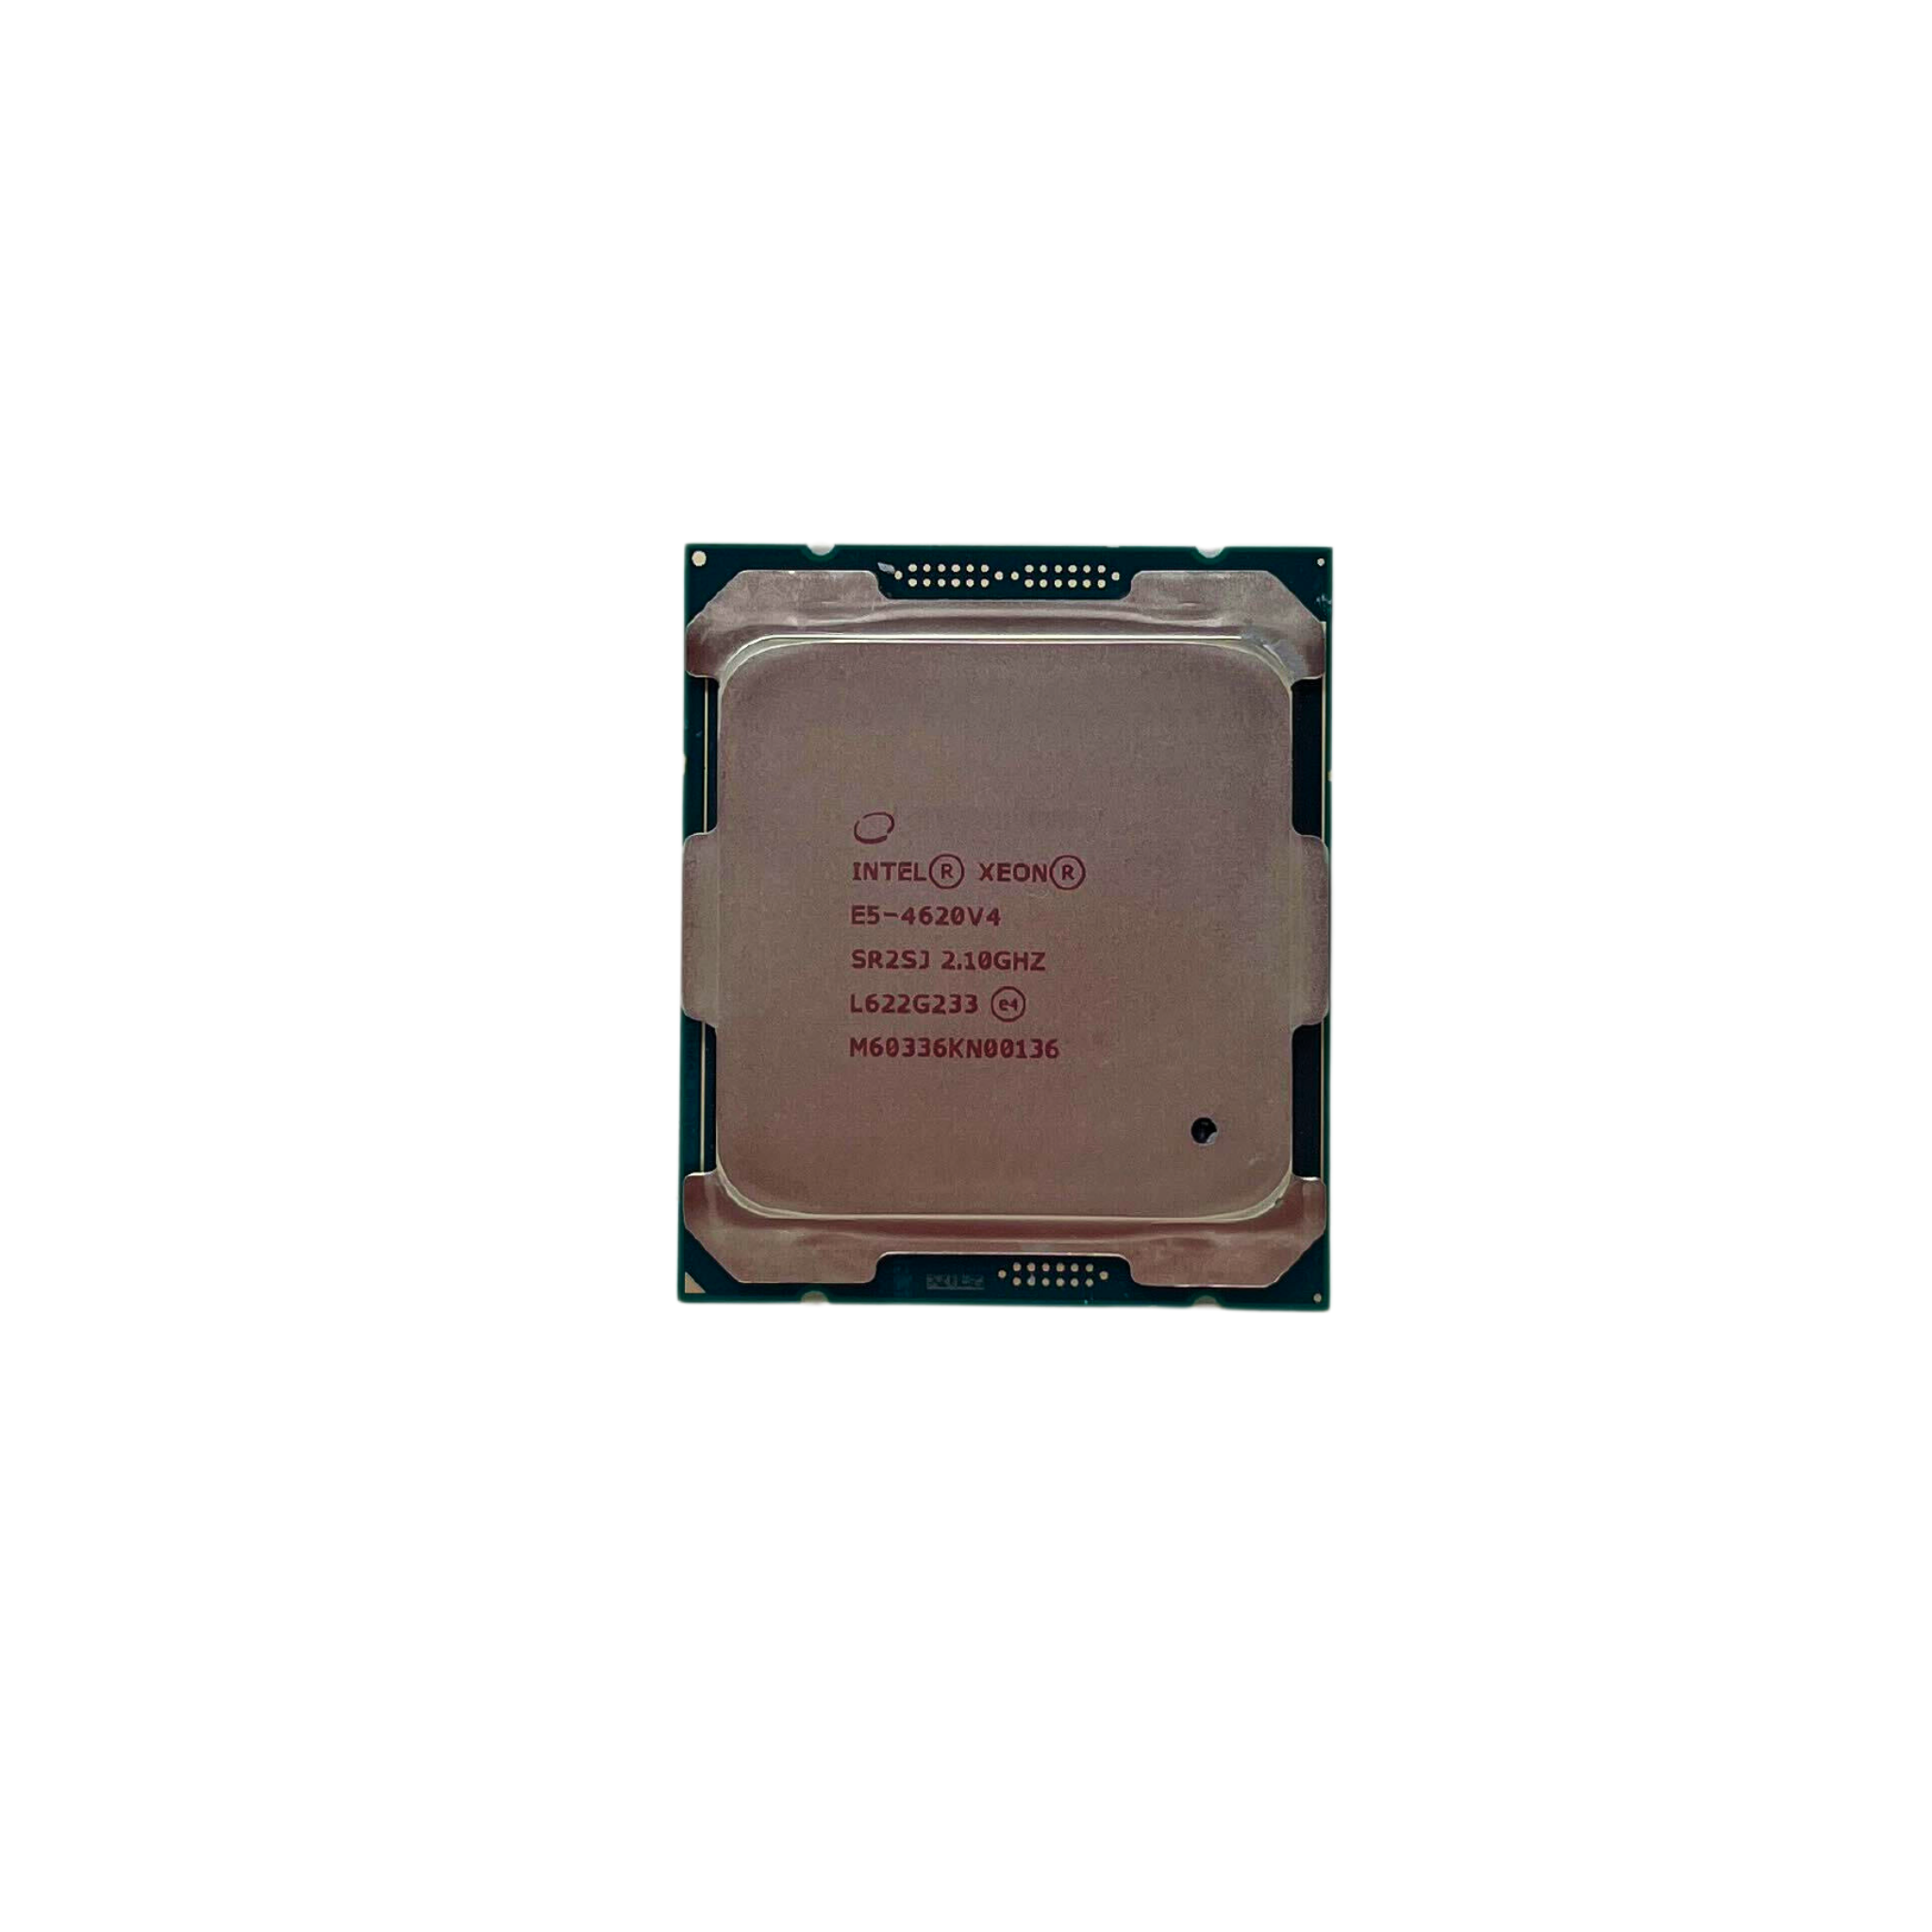  Intel Xeon E5-4620 V4  10-Core 2.10GHz FCLGA-2011-3 Processor